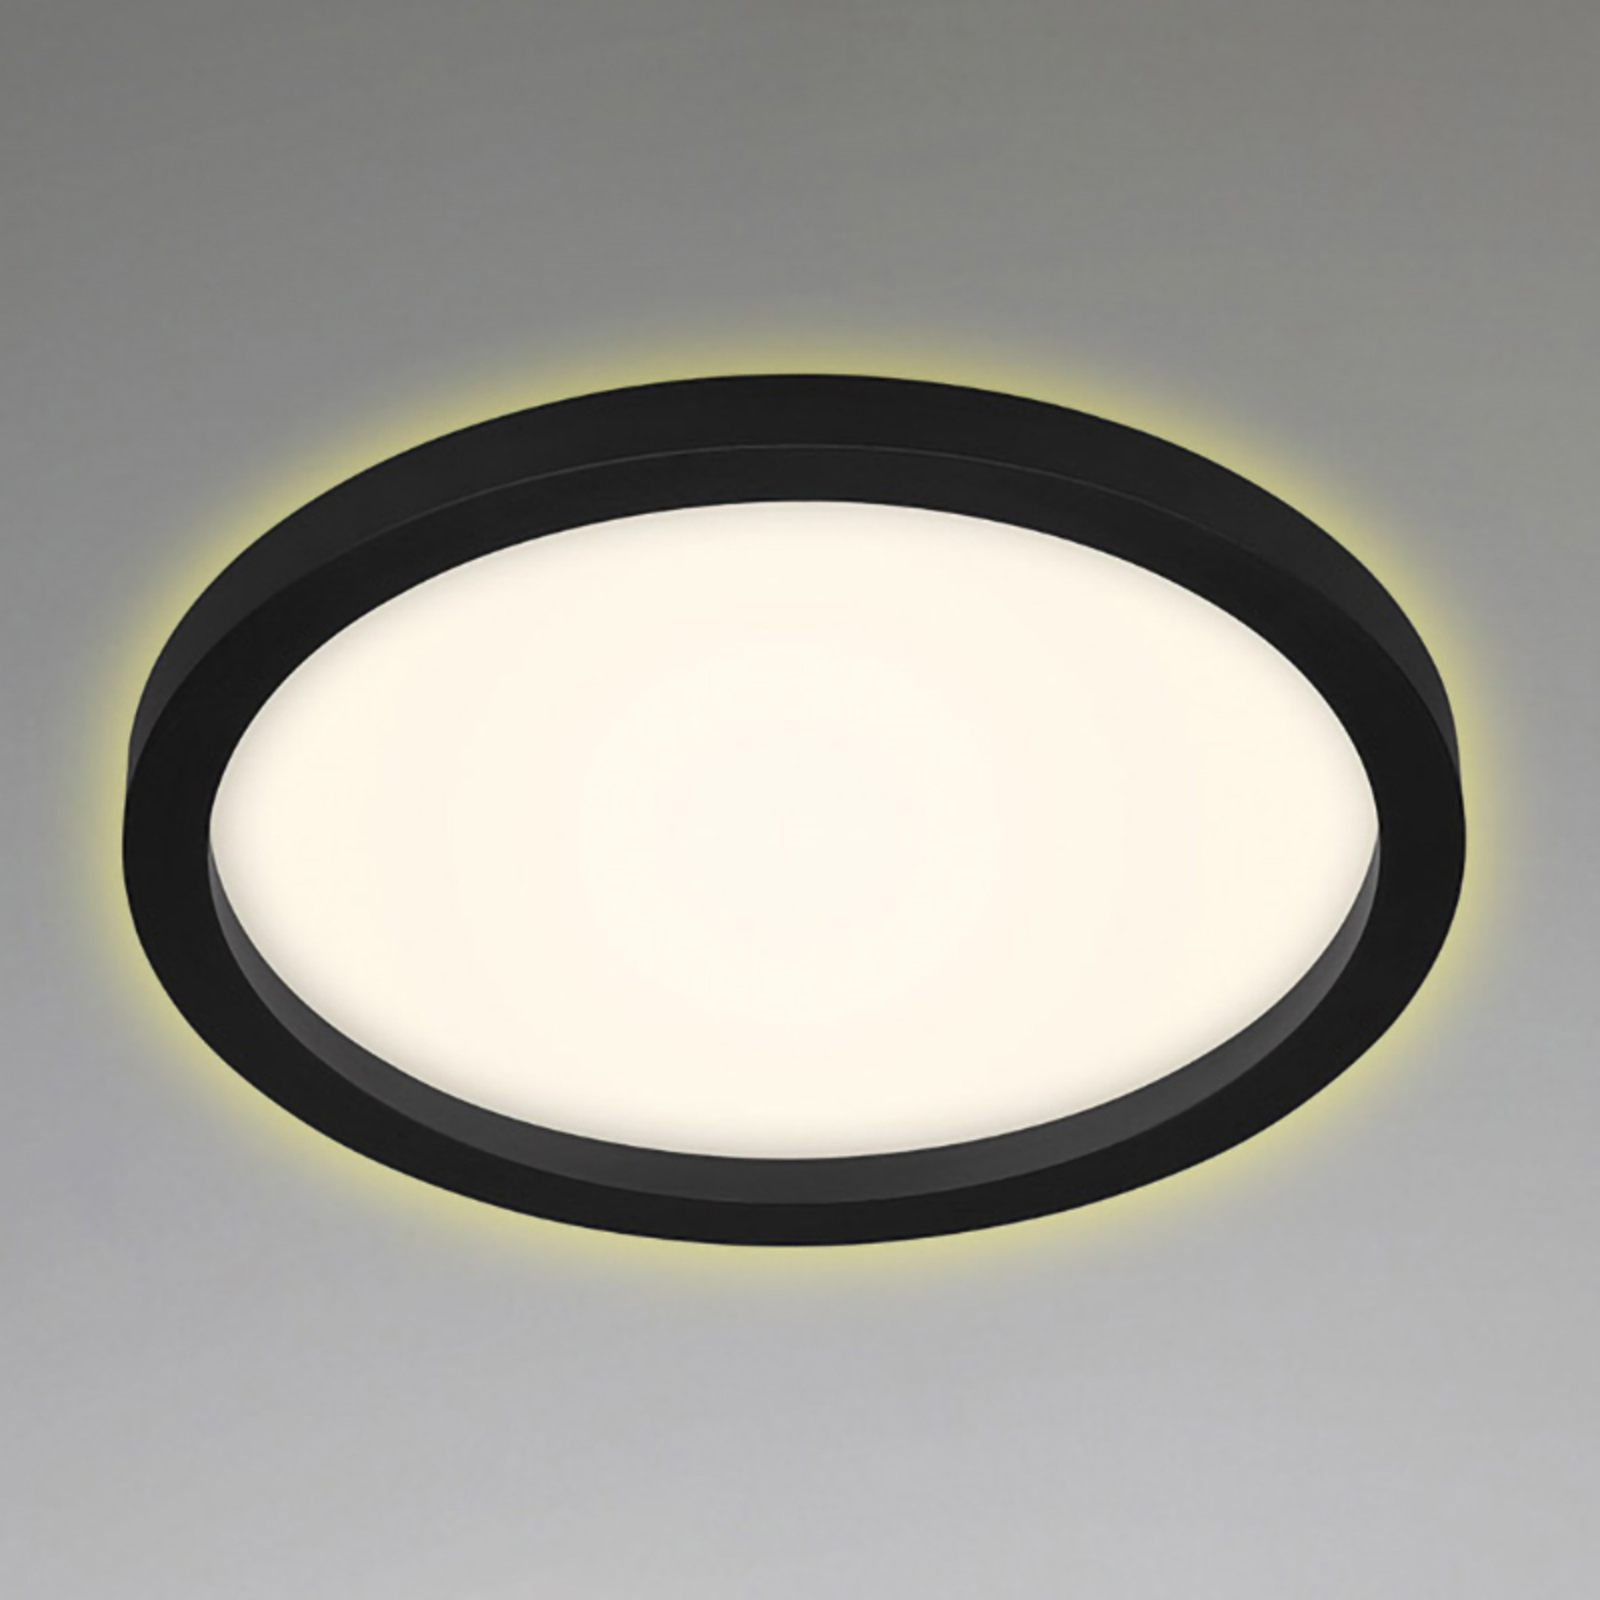 LED-Deckenlampe 7361, Ø 29 cm, schwarz